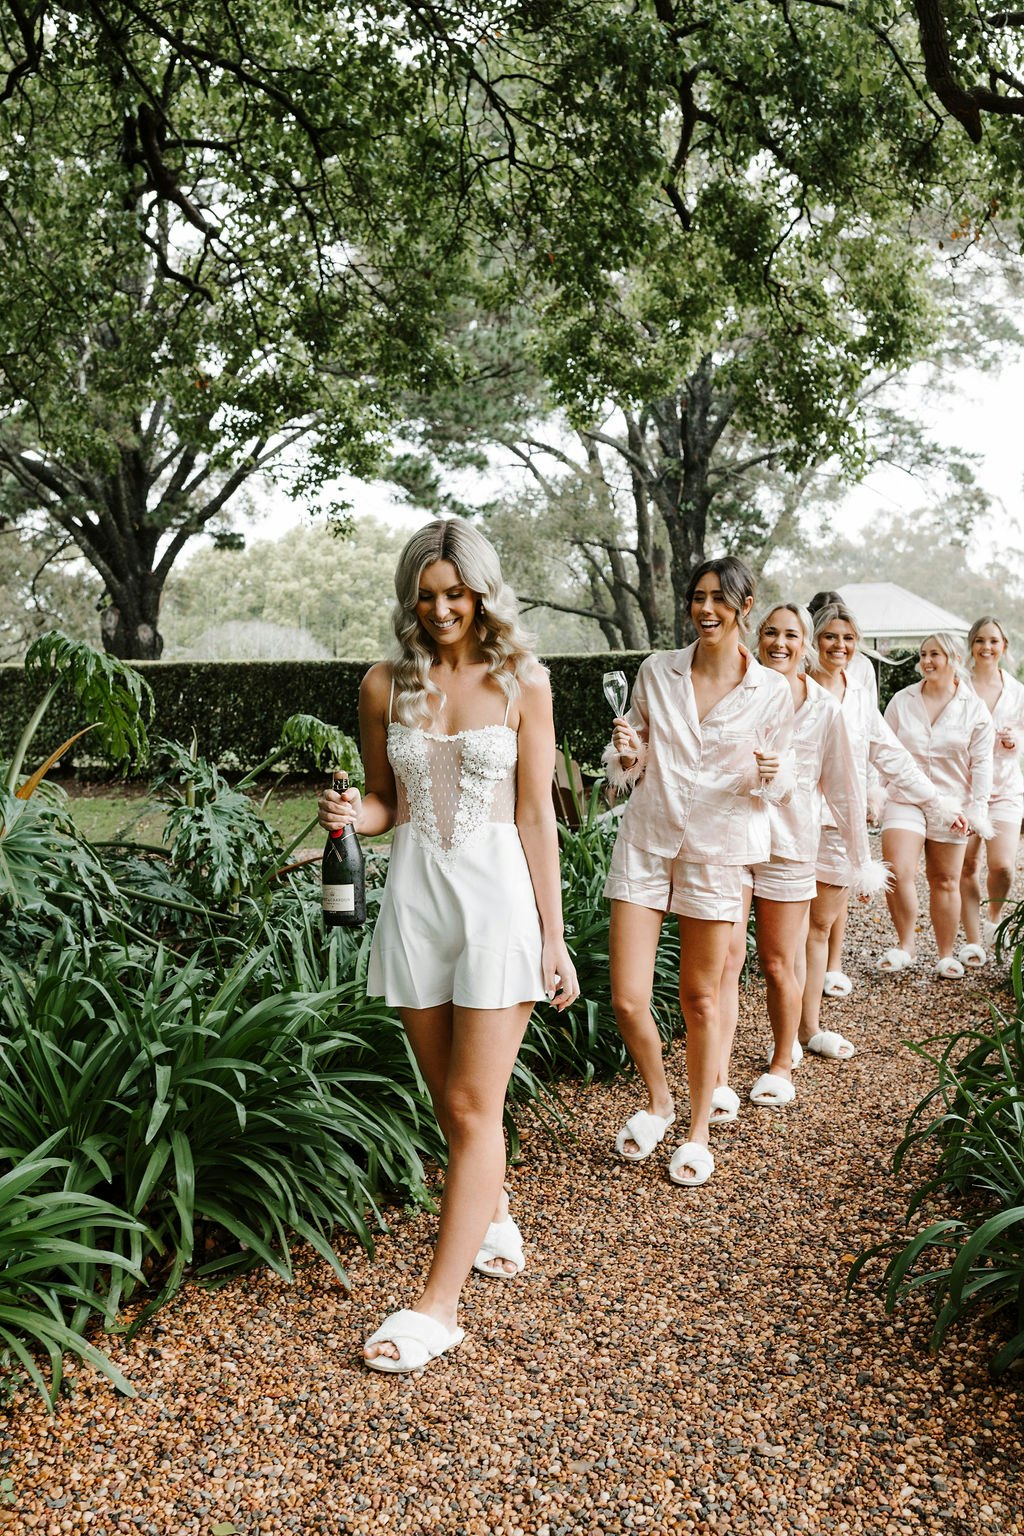 Bride and bridesmaids walking in gardens